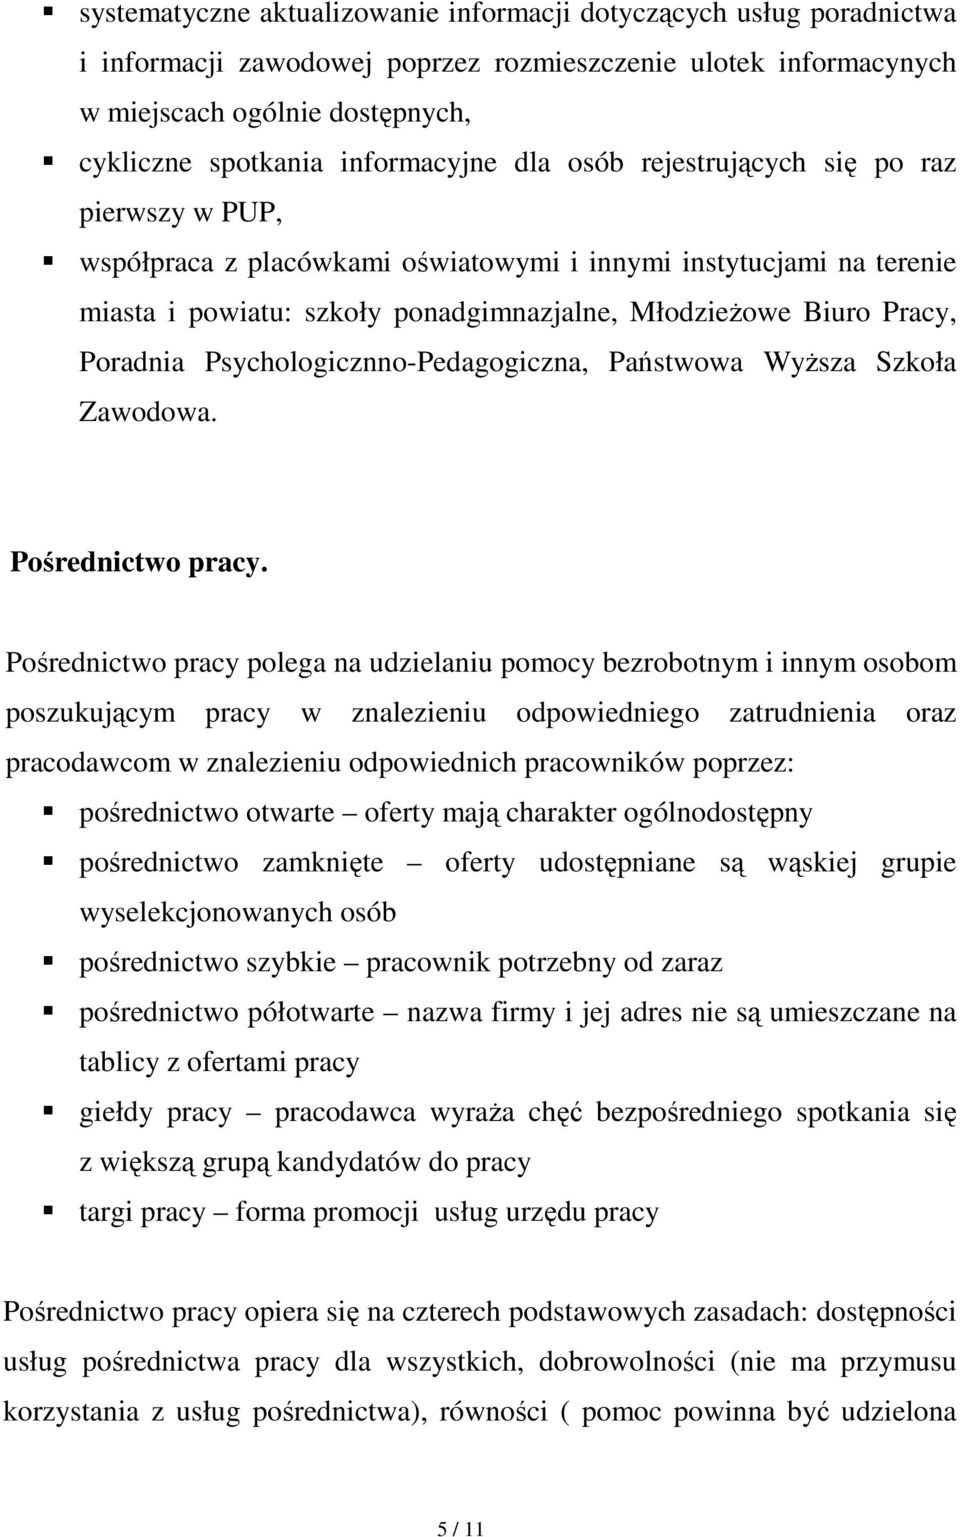 Pracy, Poradnia Psychologicznno-Pedagogiczna, Państwowa WyŜsza Szkoła Zawodowa. Pośrednictwo pracy.